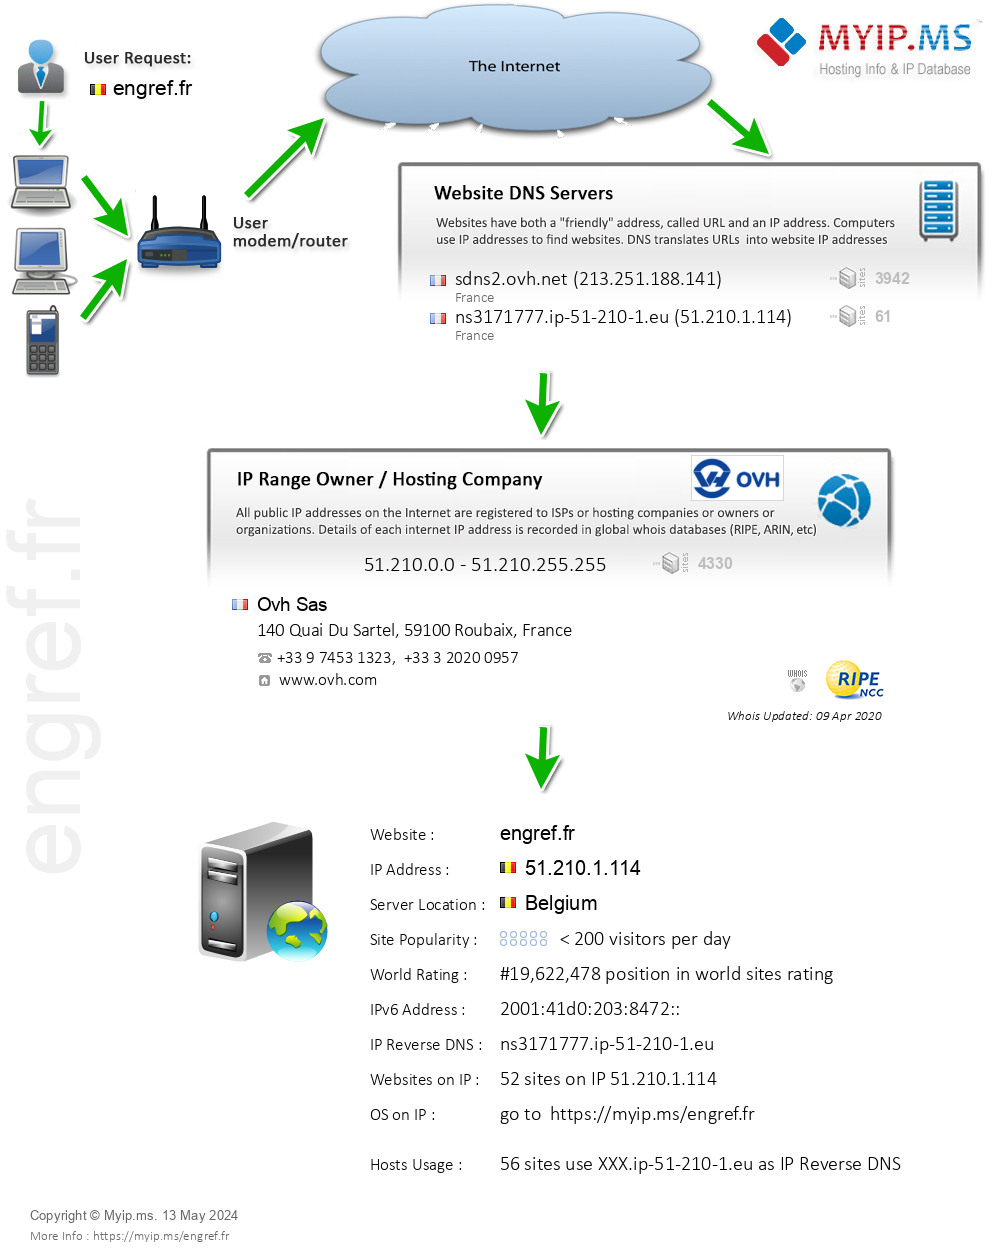 Engref.fr - Website Hosting Visual IP Diagram